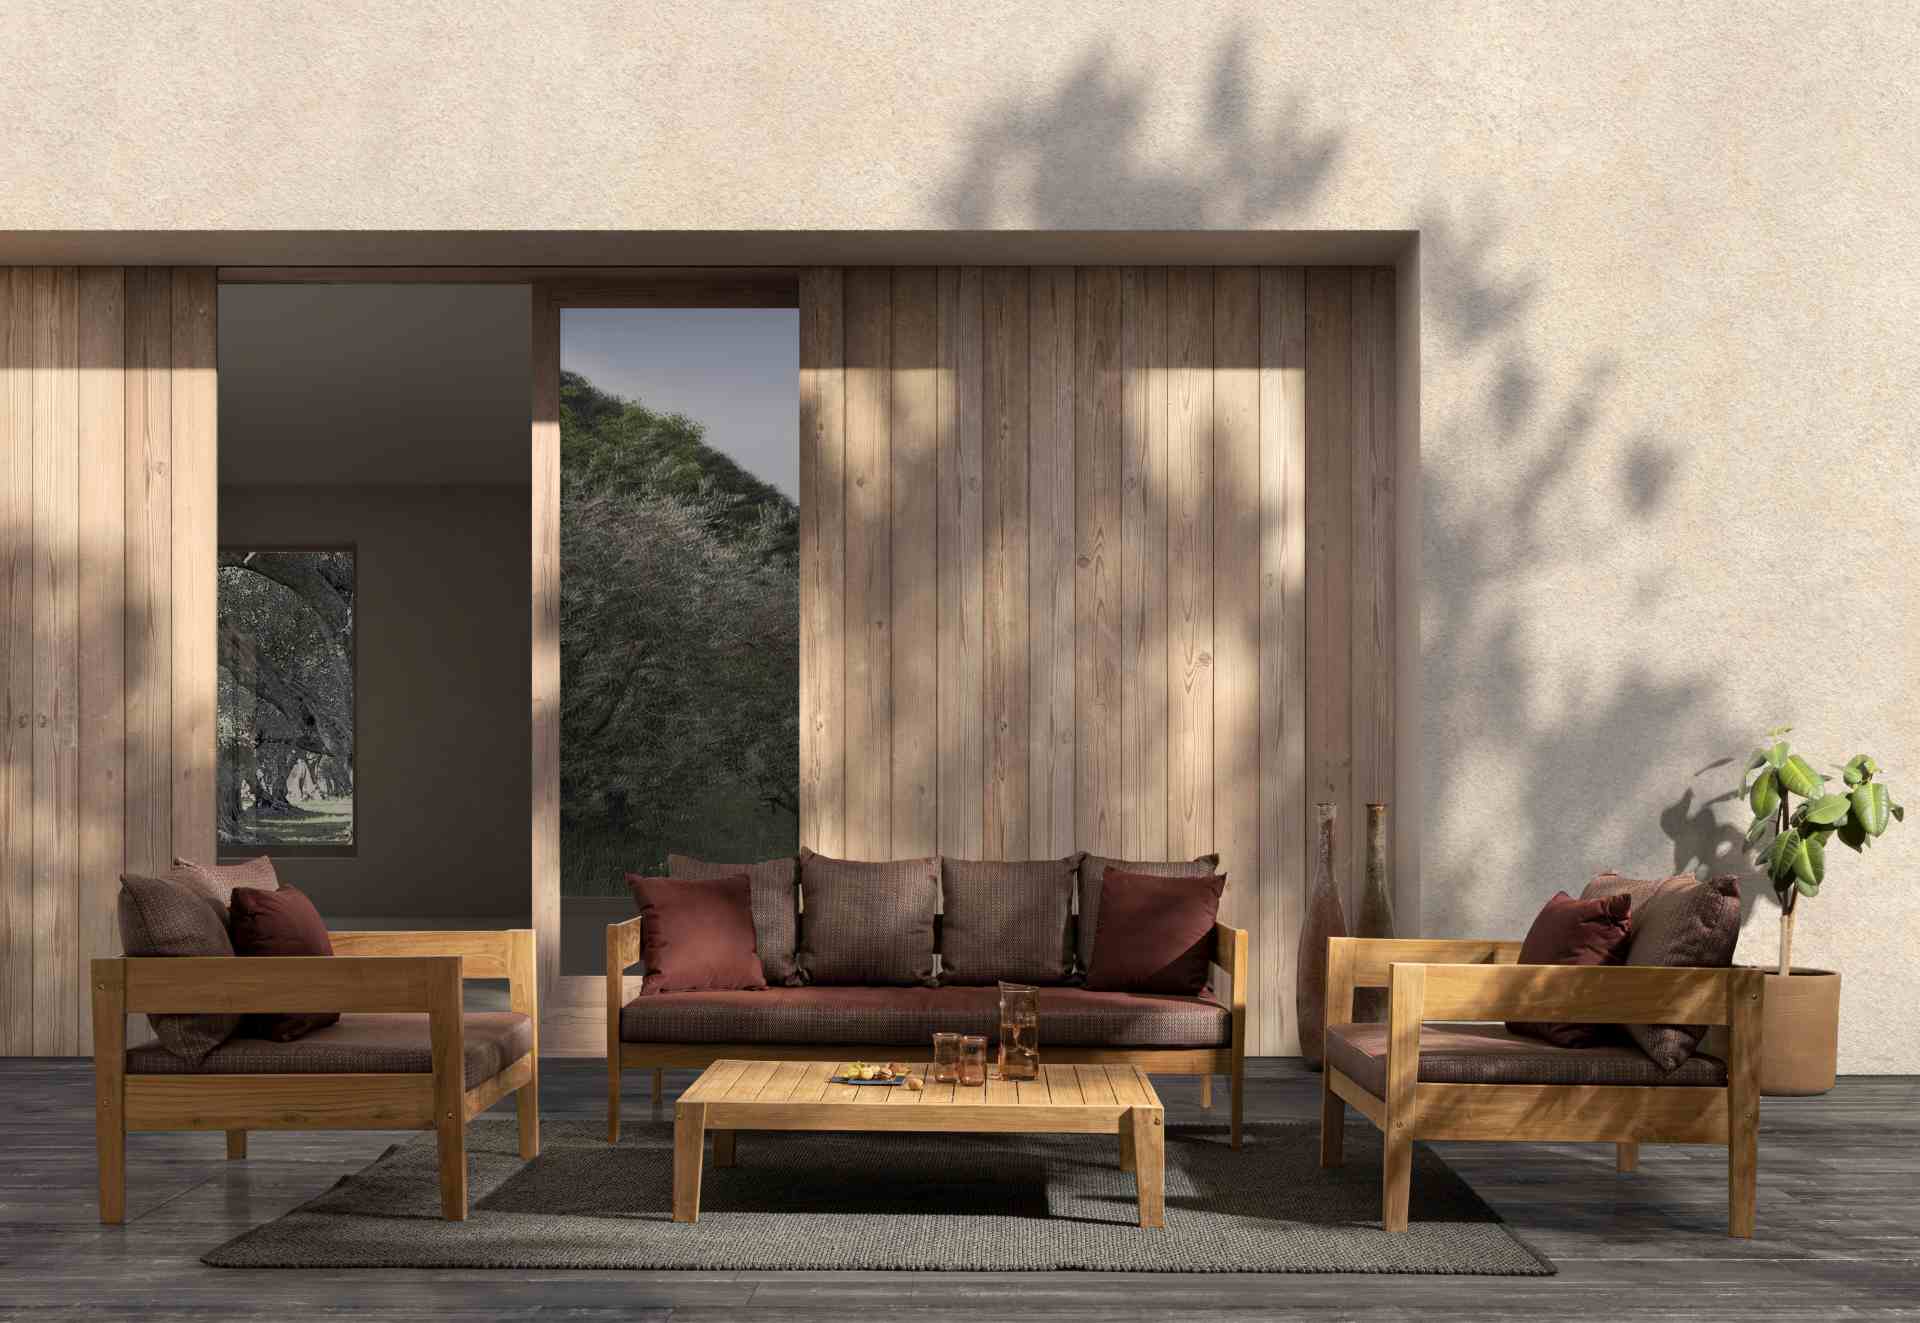 Das Gartensofa Kobo überzeugt mit seinem klassischen Design. Gefertigt wurde es aus Teakholz, welche einen natürlichen Farbton besitzt. Die Kissen und Auflagen haben eine rote Farbe. Das Sofa verfügt über eine Sitzhöhe von 41 cm und ist für den Outdoor Be